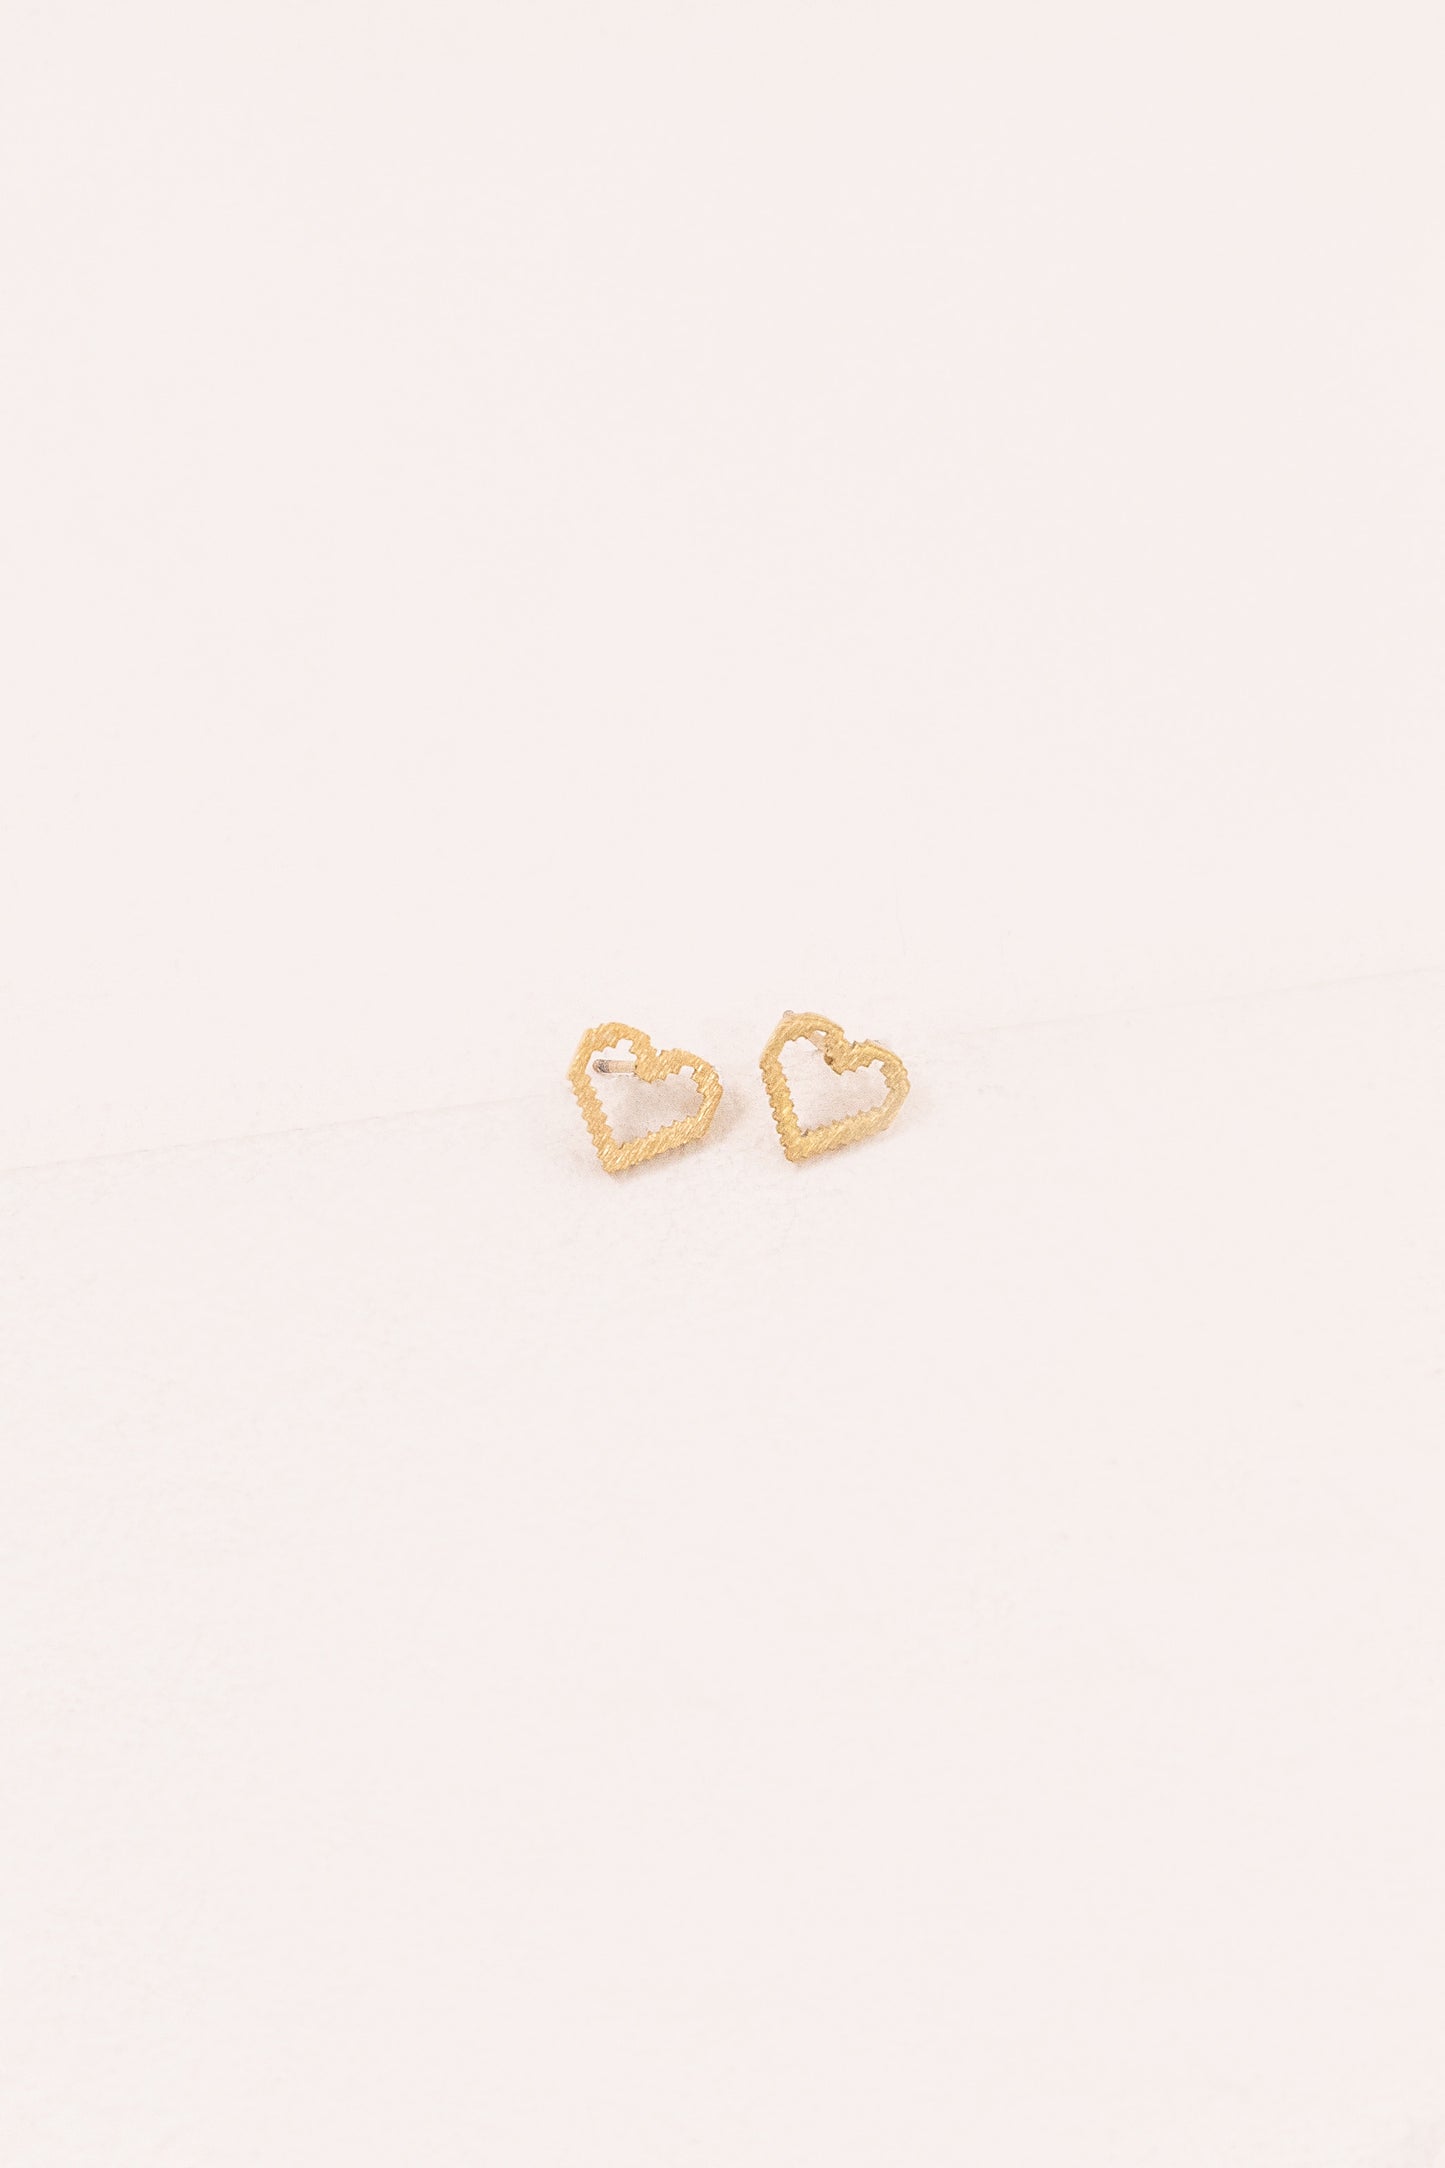 8-Bit Heart Earrings (14K)